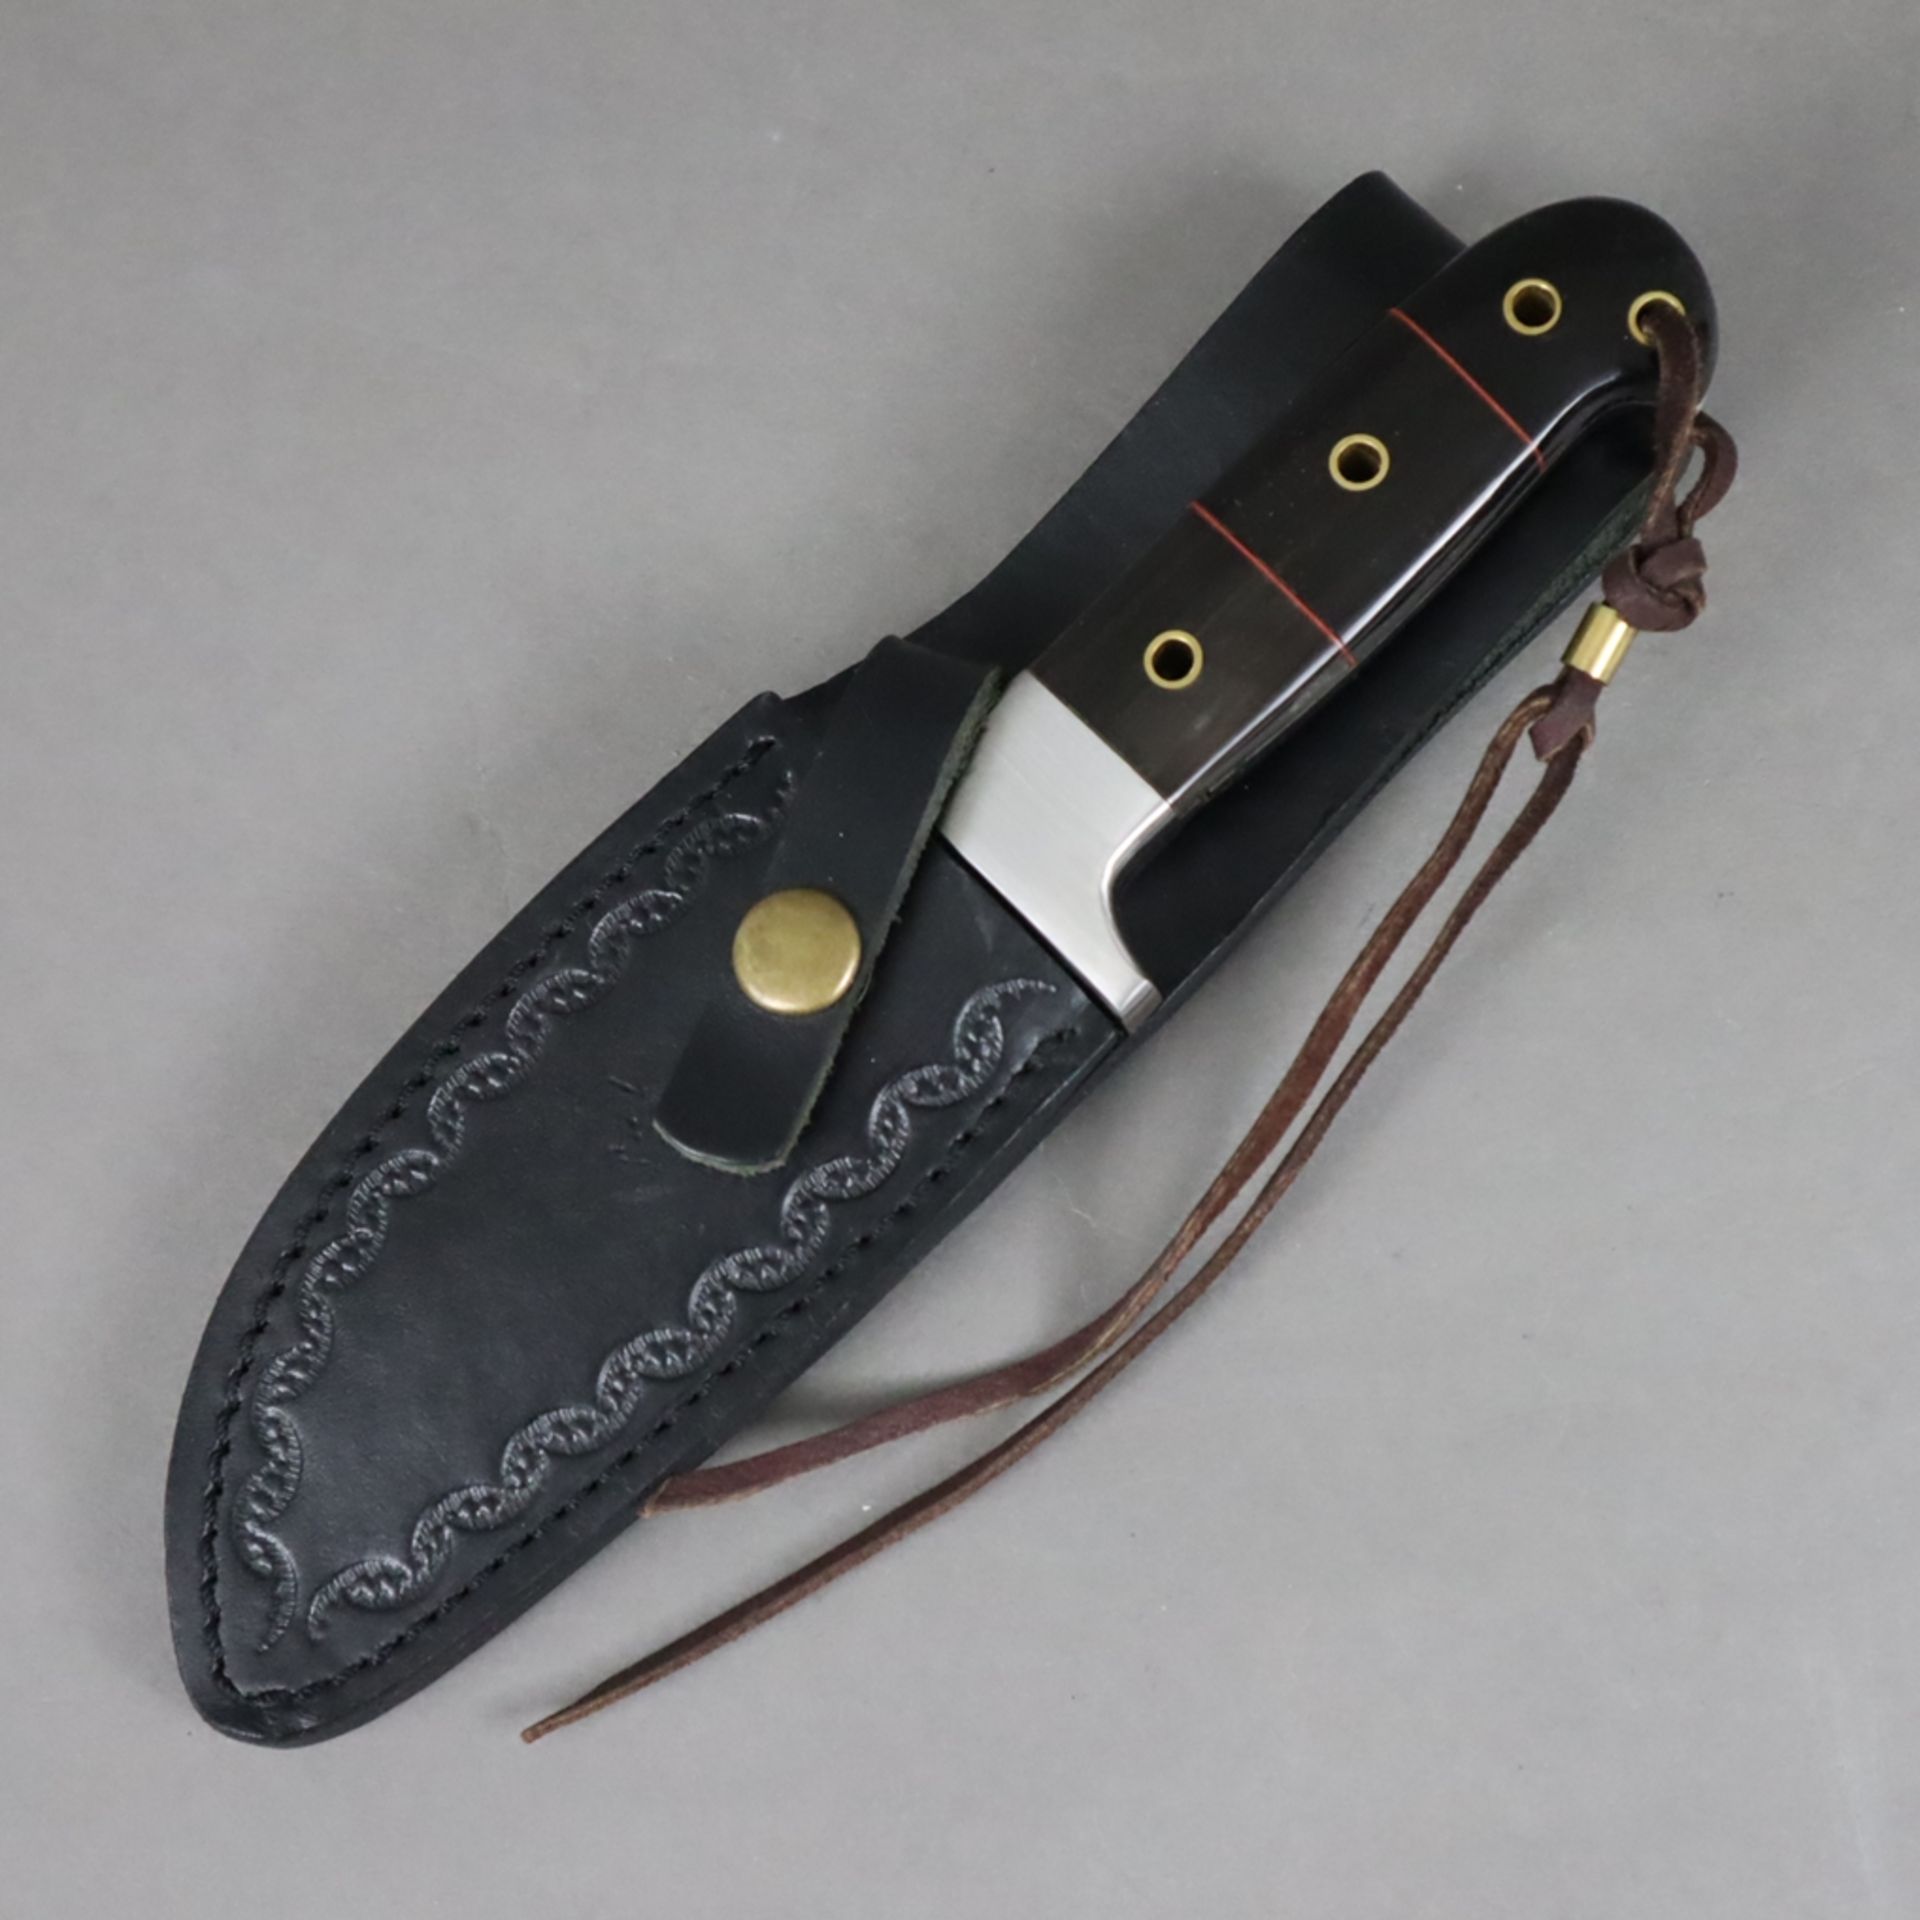 Outdoormesser in Lederscheide - Rückenklinge mit Damast-Zeichnung und Mittelgrat, lackierte Griffsc